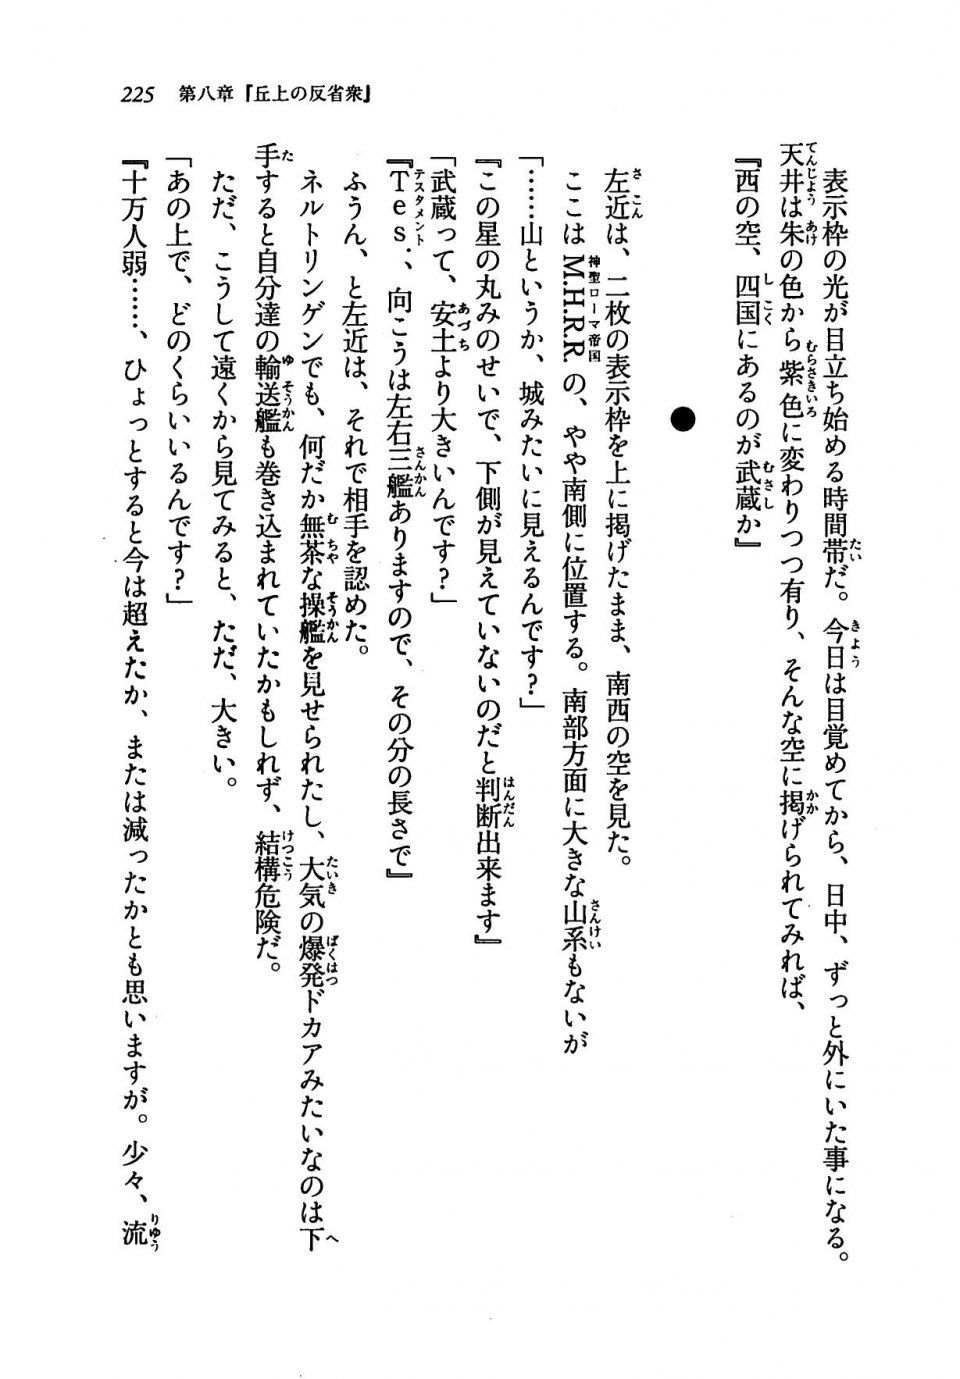 Kyoukai Senjou no Horizon LN Vol 19(8A) - Photo #225